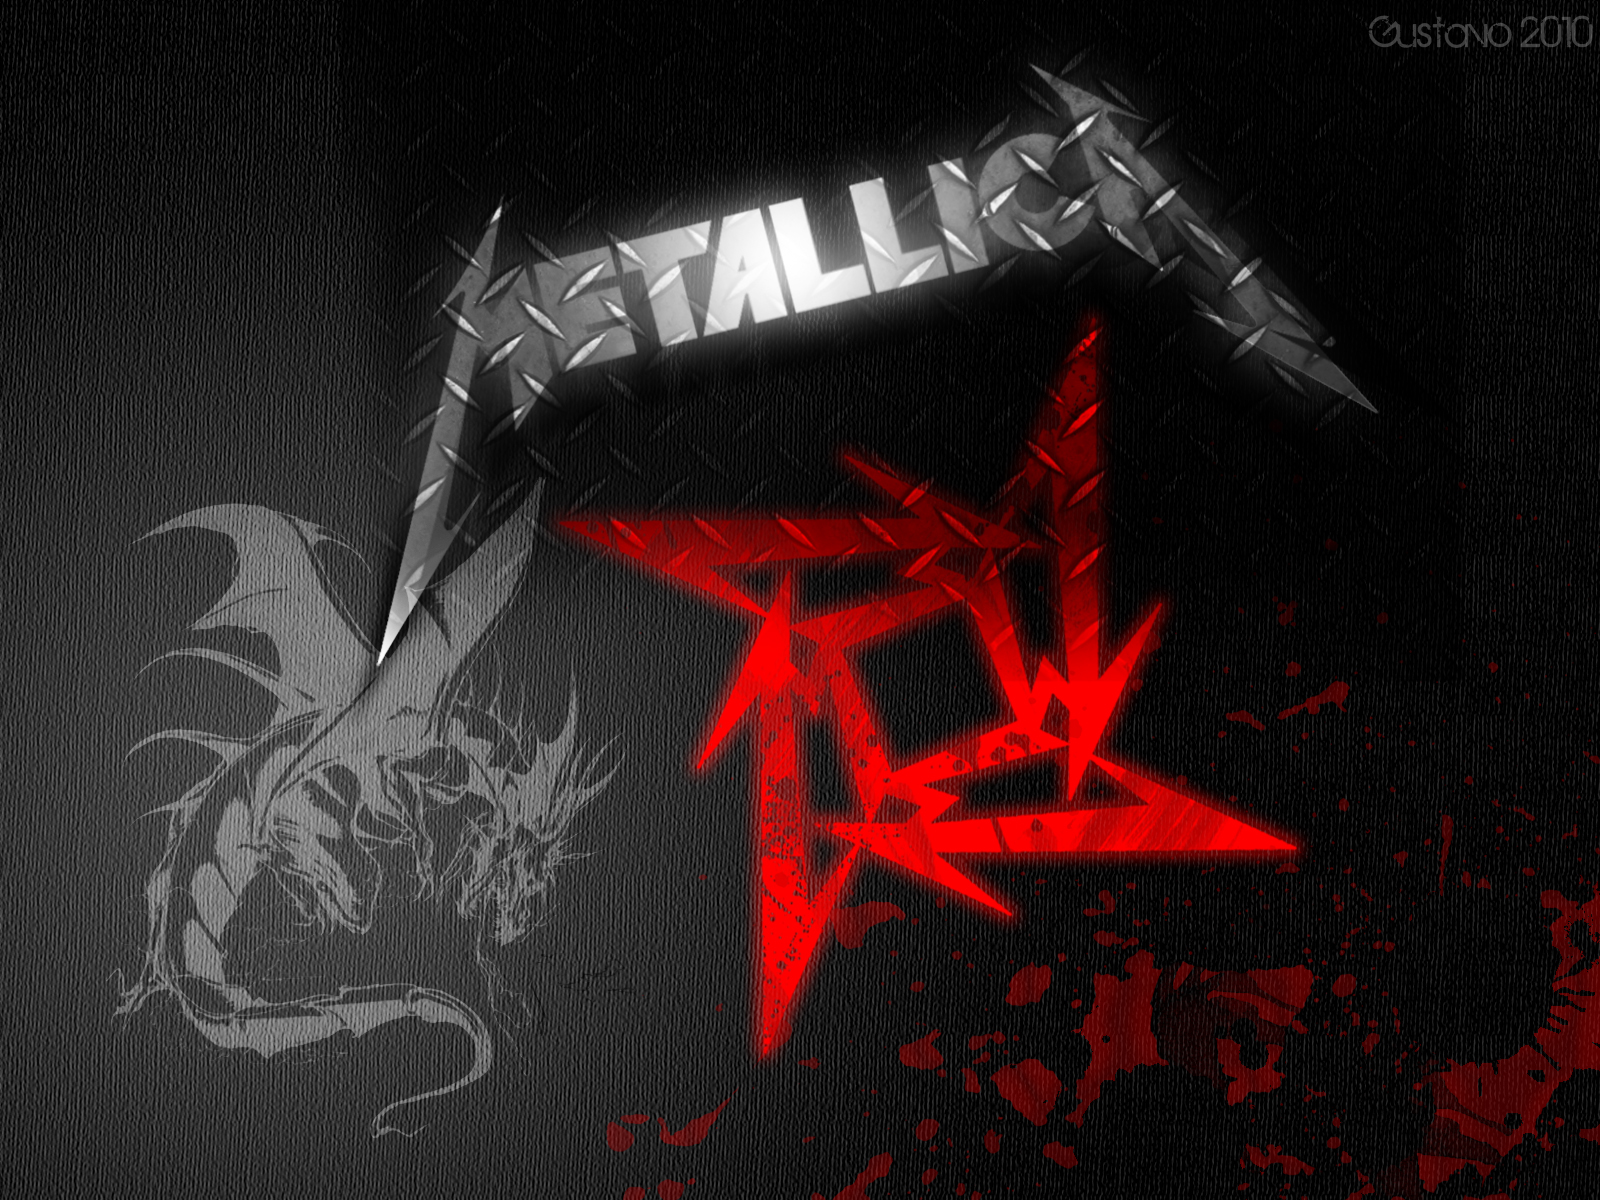 Outstanding Metallica Wallpaper